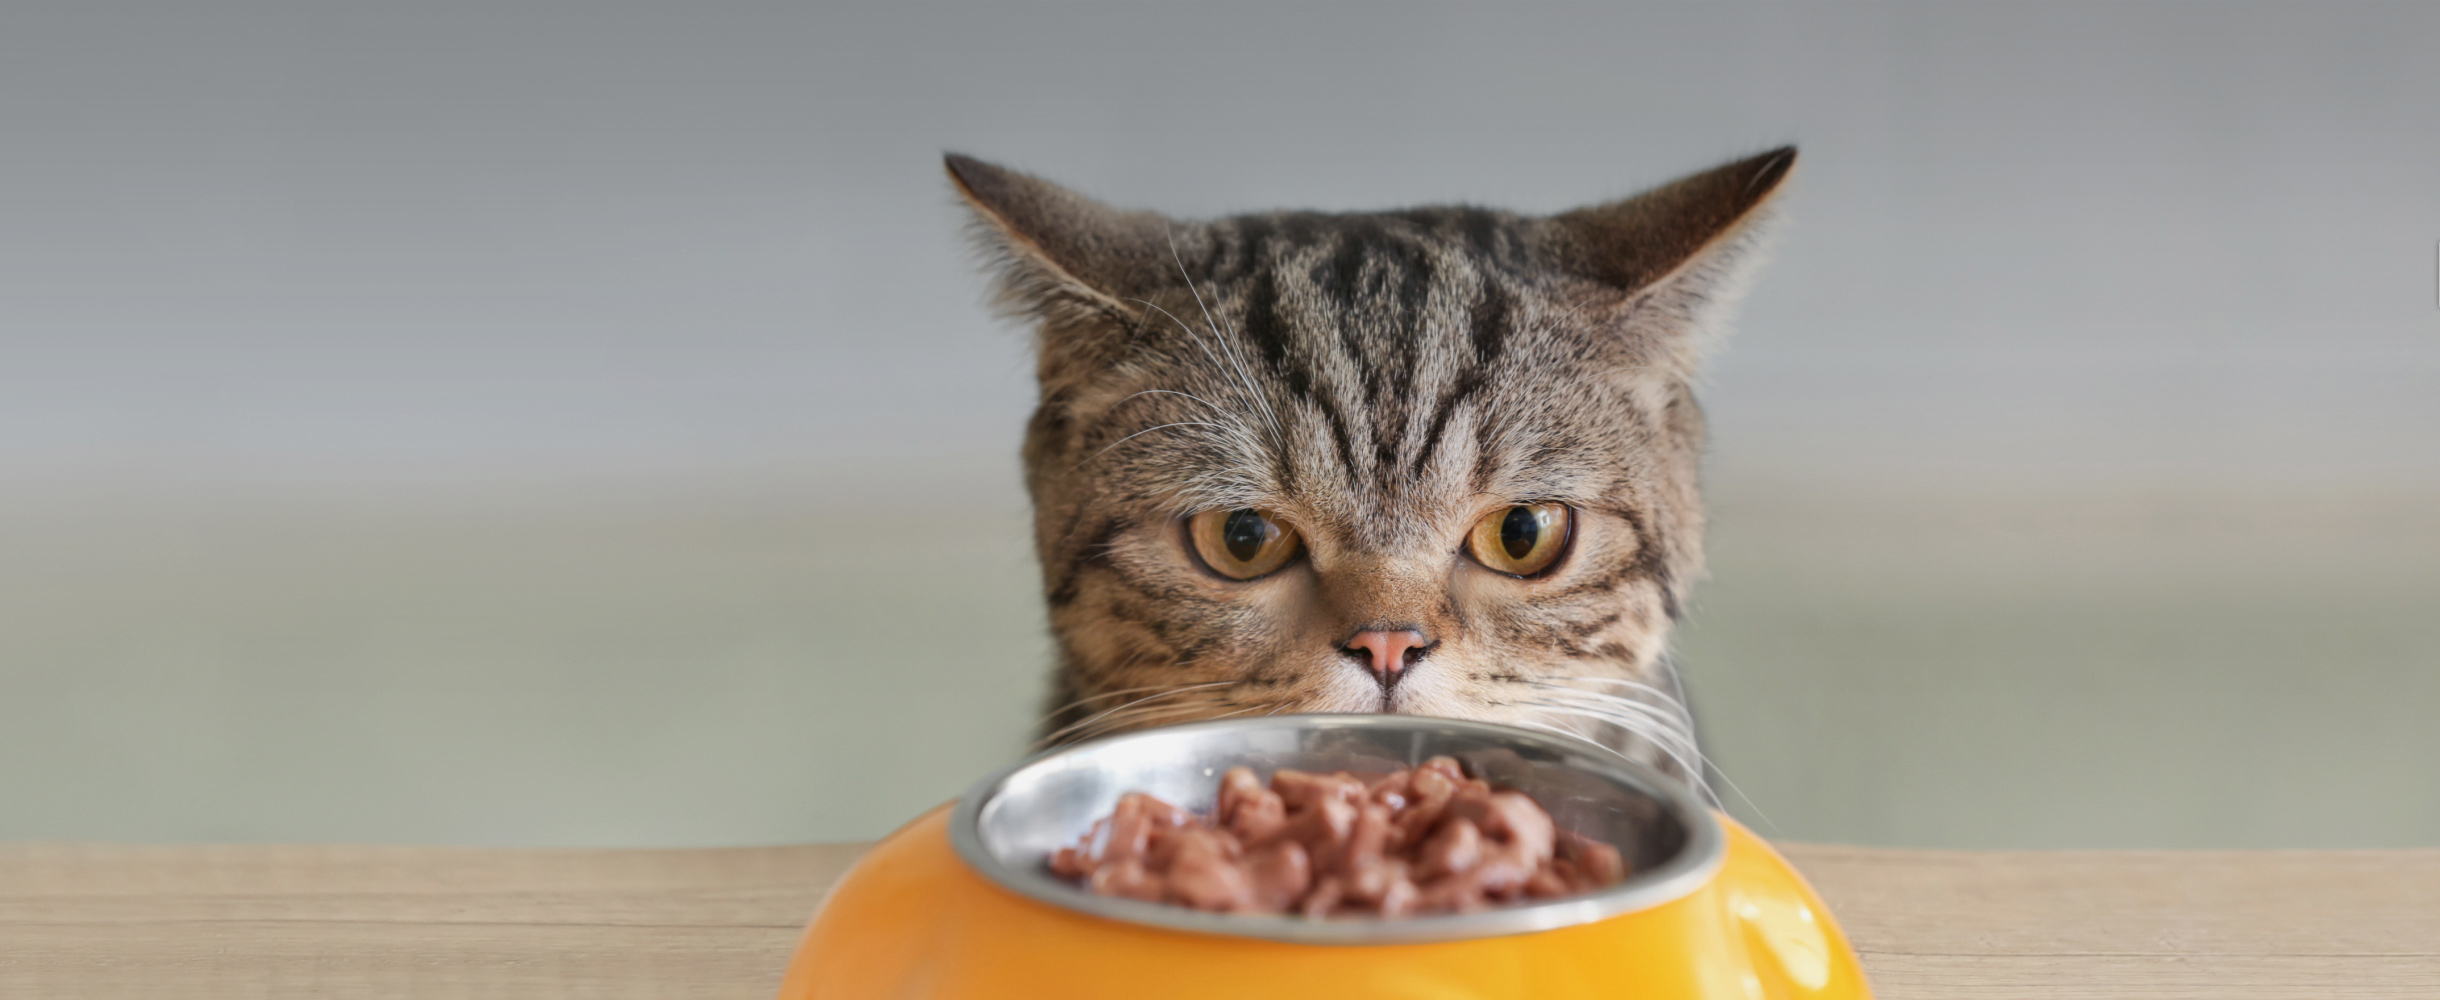 Худшие корма для кошек: 8 самых плохих вариантов готовой еды для котов